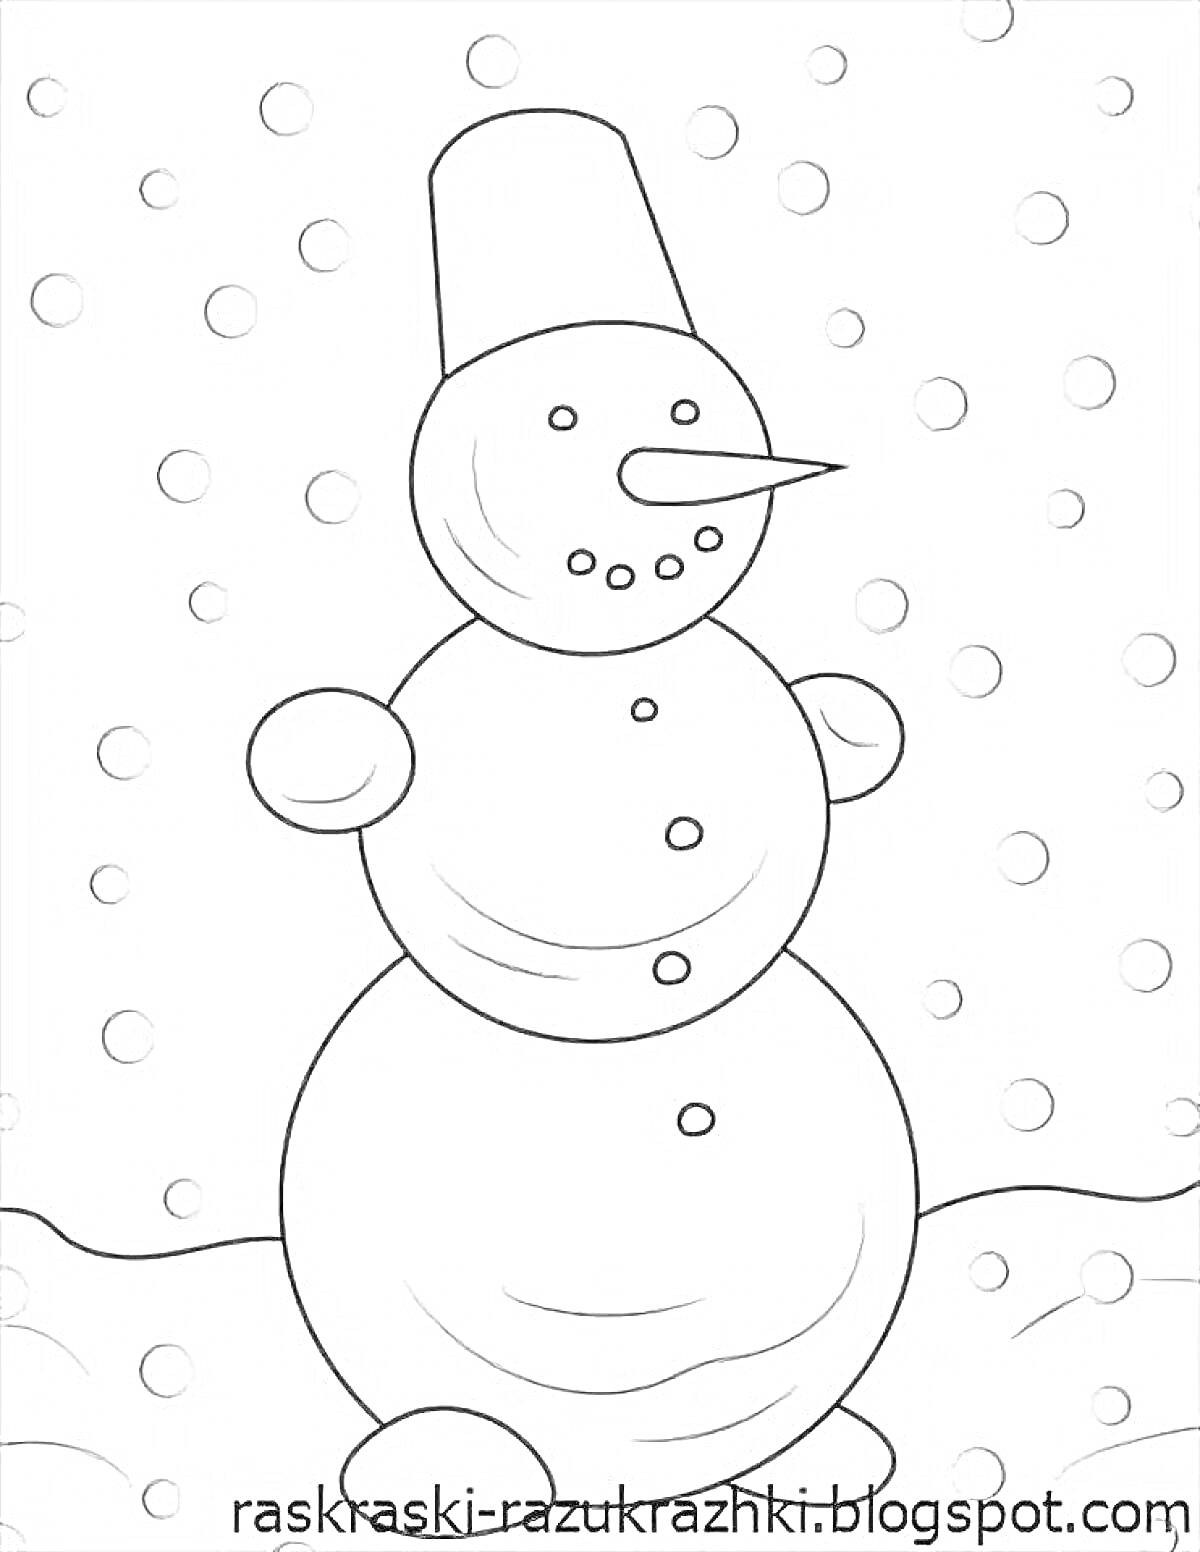 Раскраска снеговик на снегу с ведром на голове и пуговицами